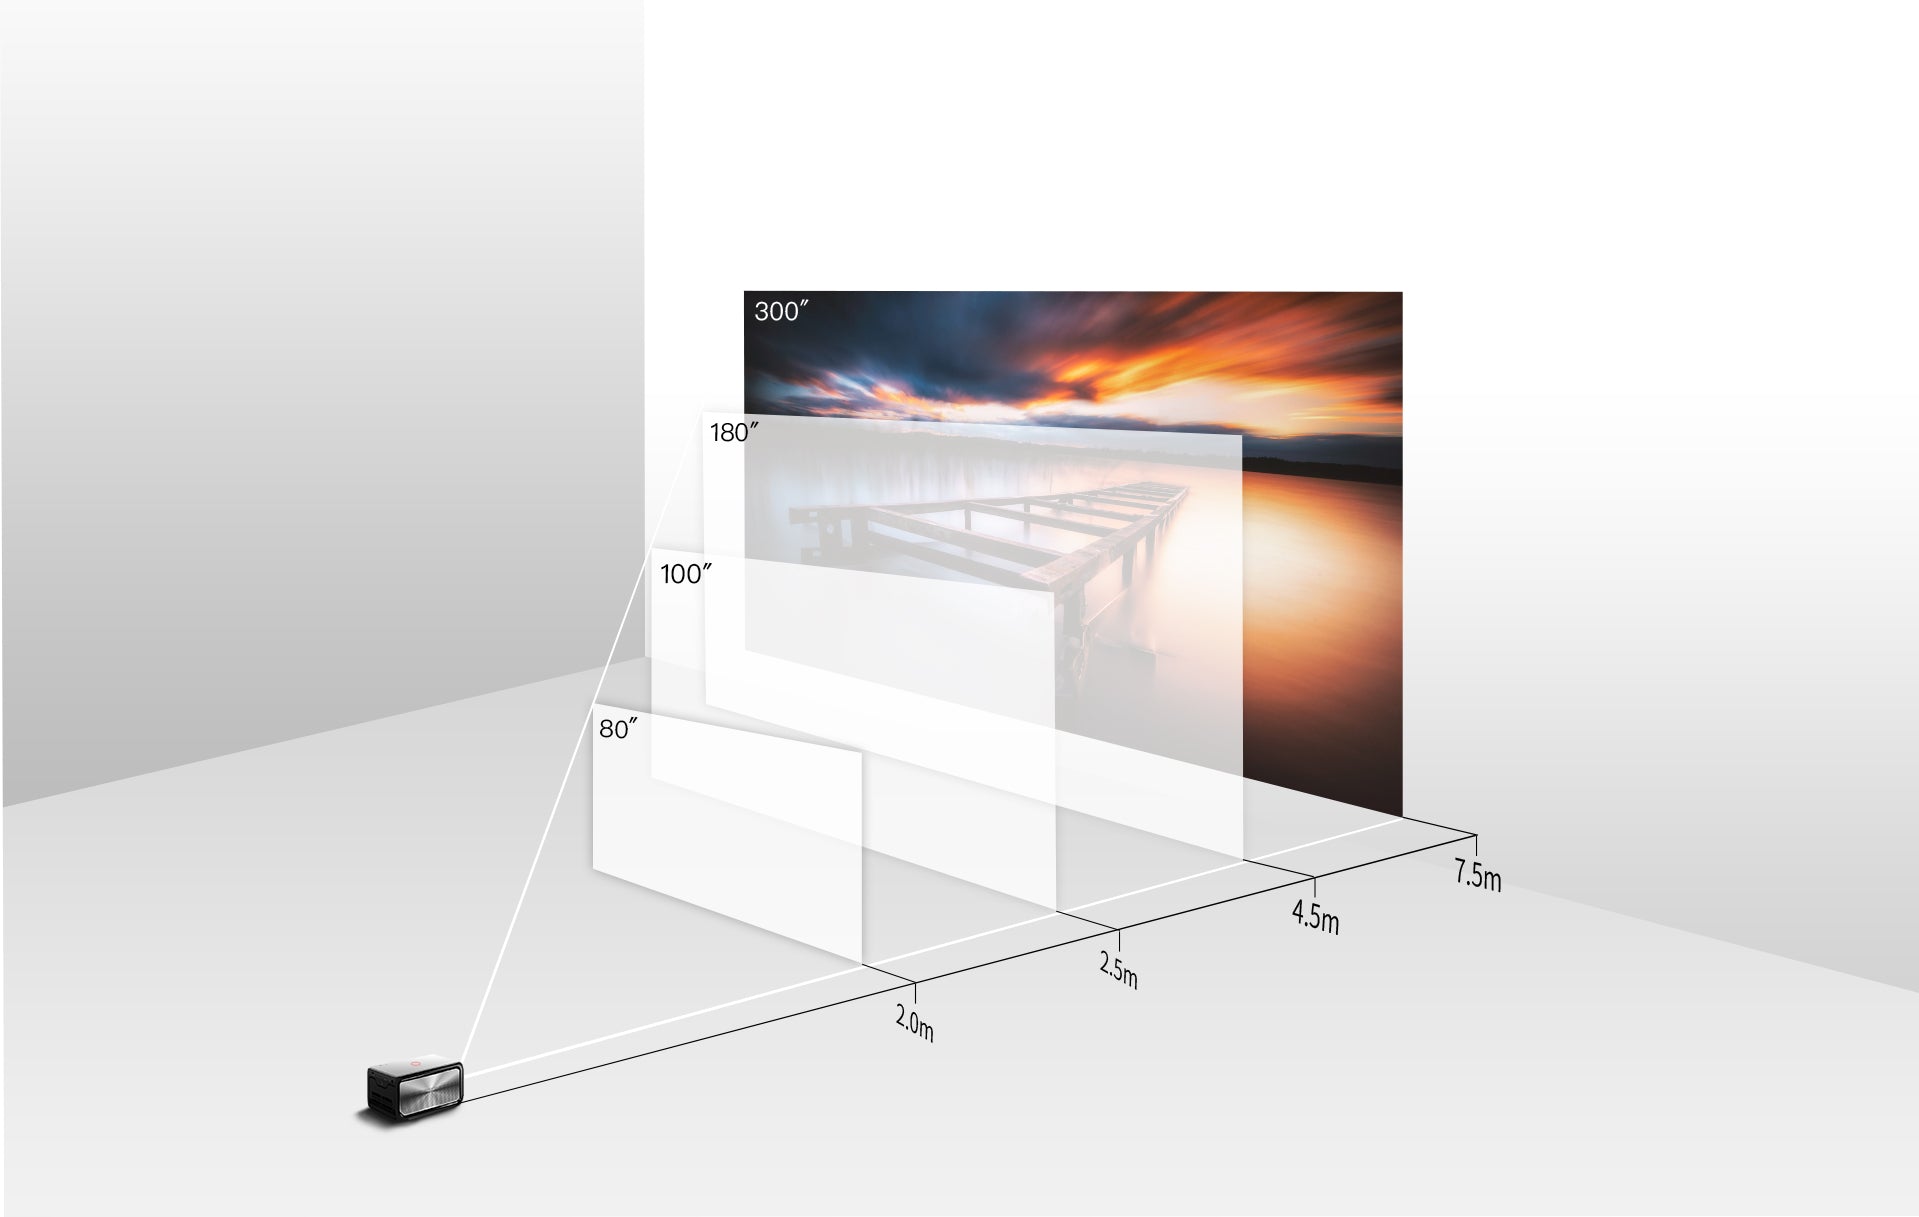 Полностью экран 120. Размер экрана 300 дюймов для проектора. Габариты экрана для проектора шириной 330см. Экран для проектора 300 дюймов. Размер экрана 100-120 дюймов для проектора.